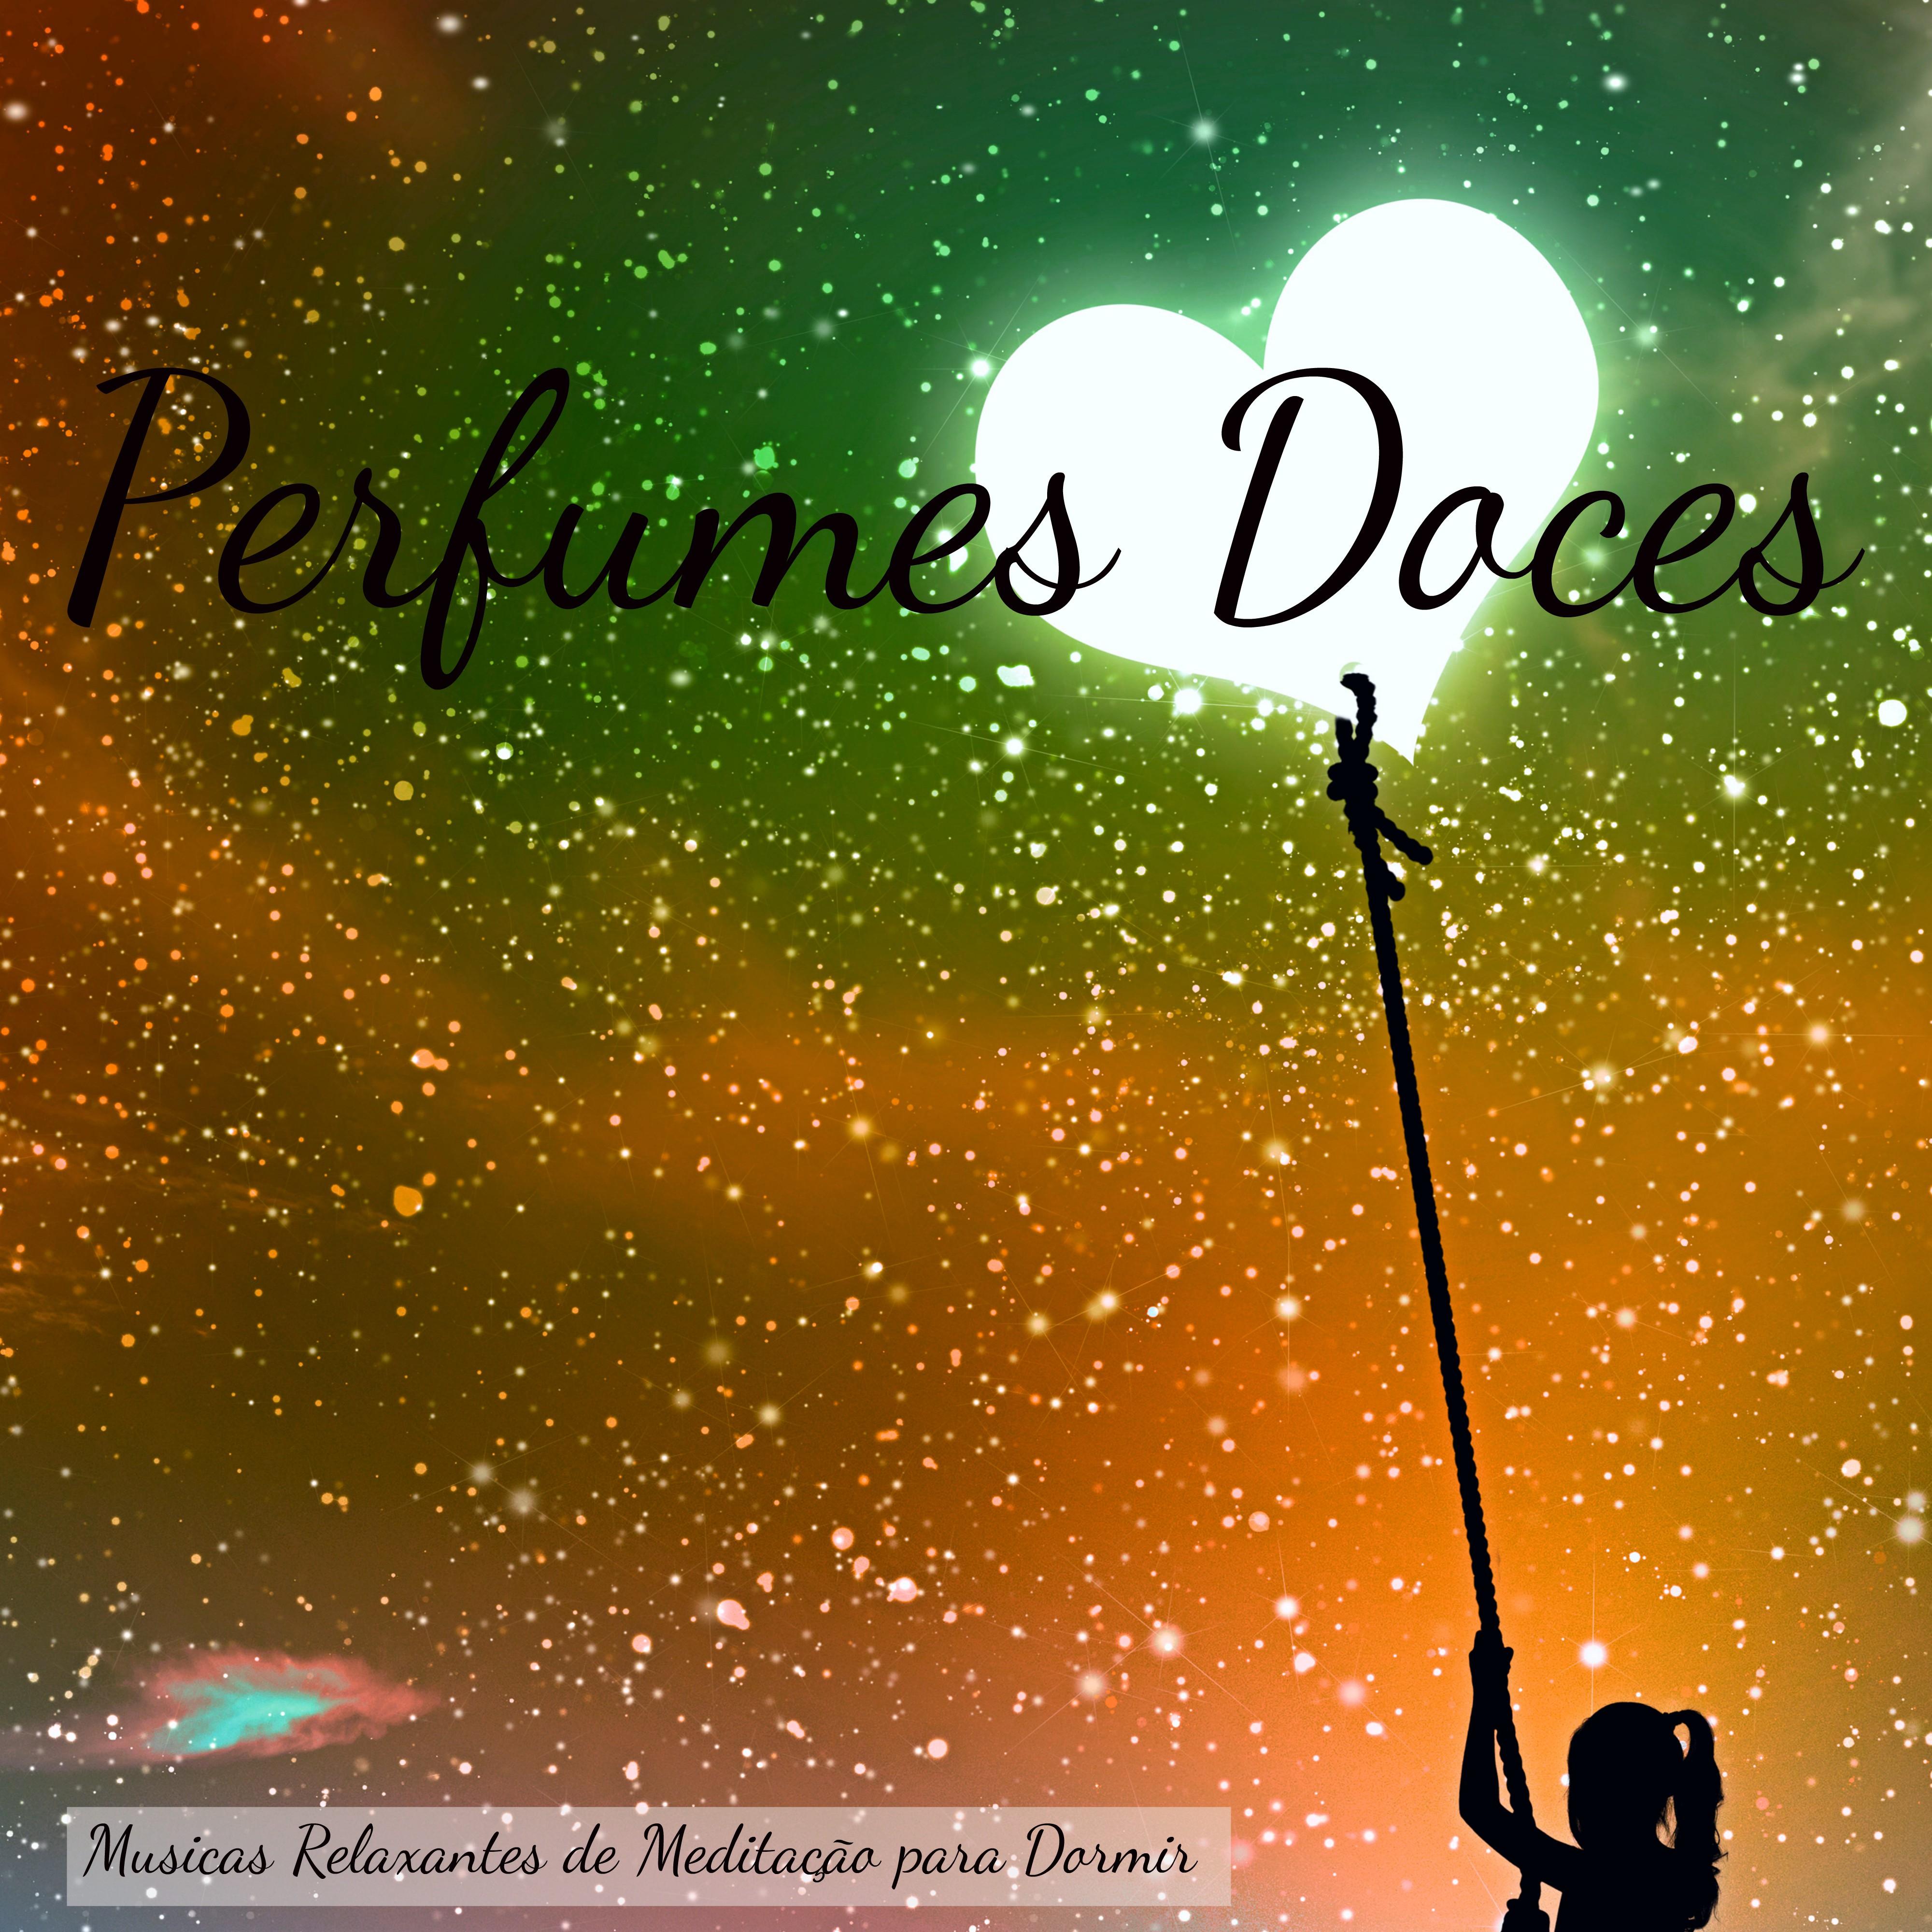 Perfumes Doces – Musicas Relaxantes de Meditação para Dormir, Canções com Sons de Natureza Instrumentais